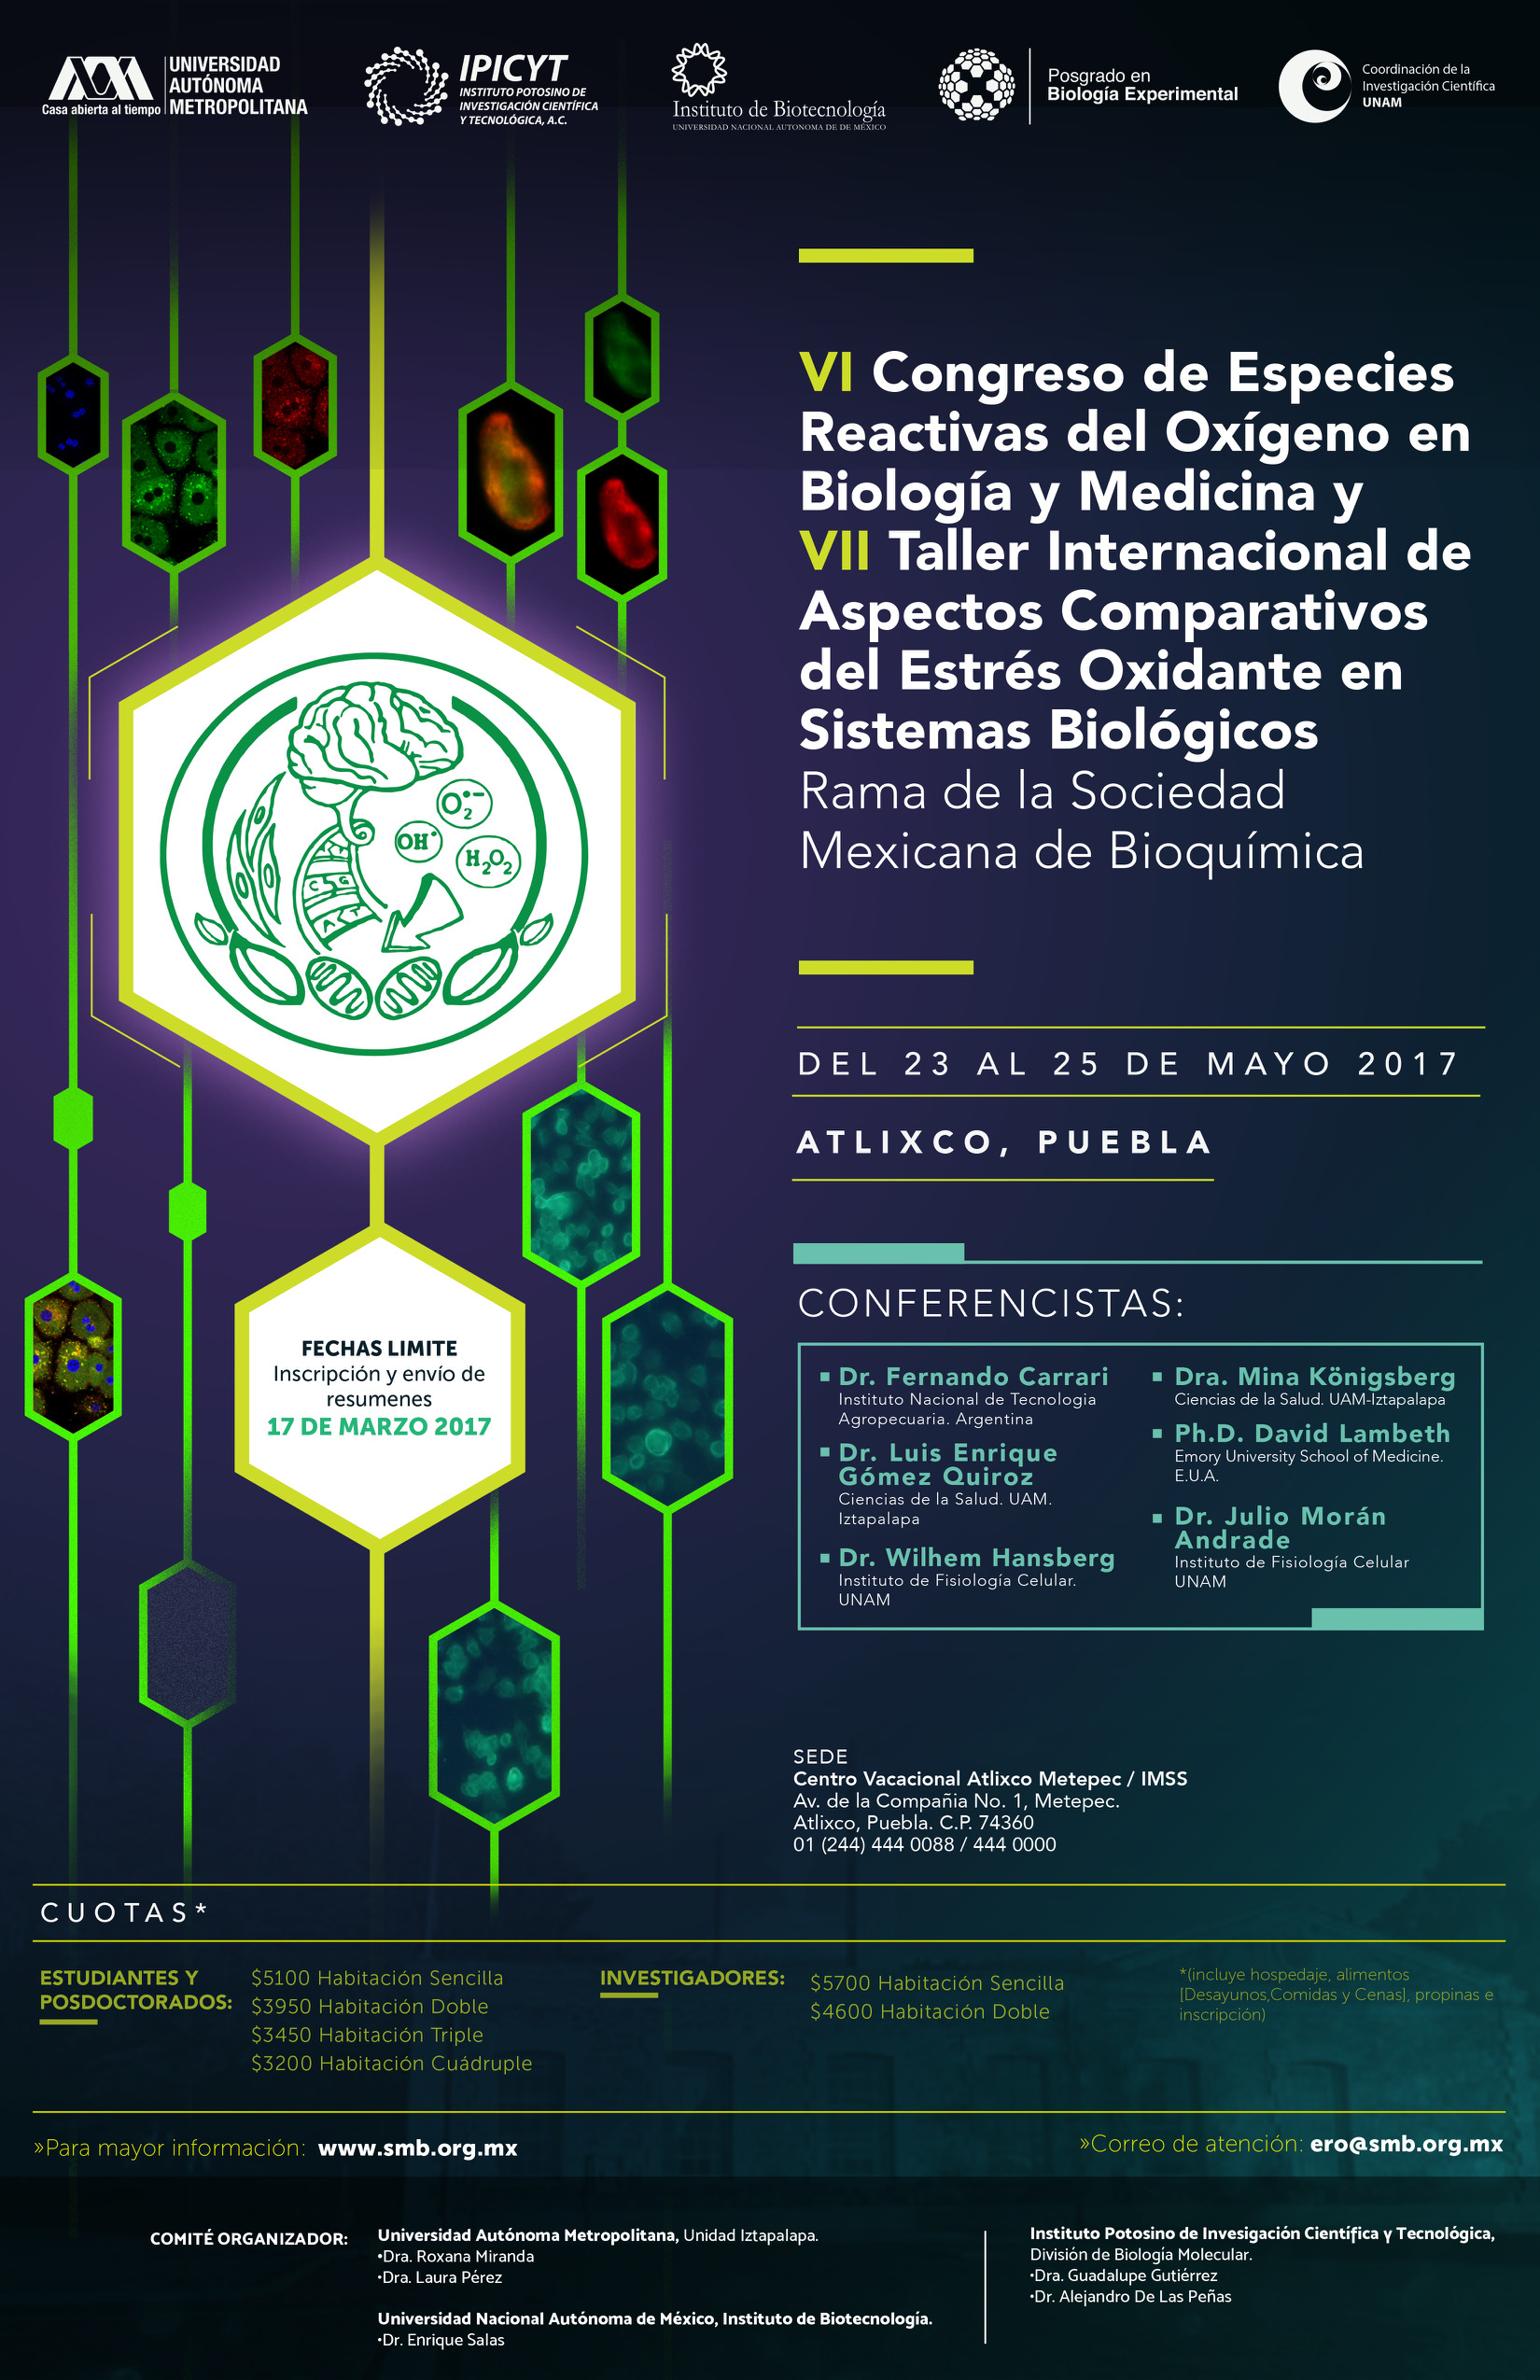 VI Congreso de Especies Reactivas del Oxigeno en Biología y Medicina